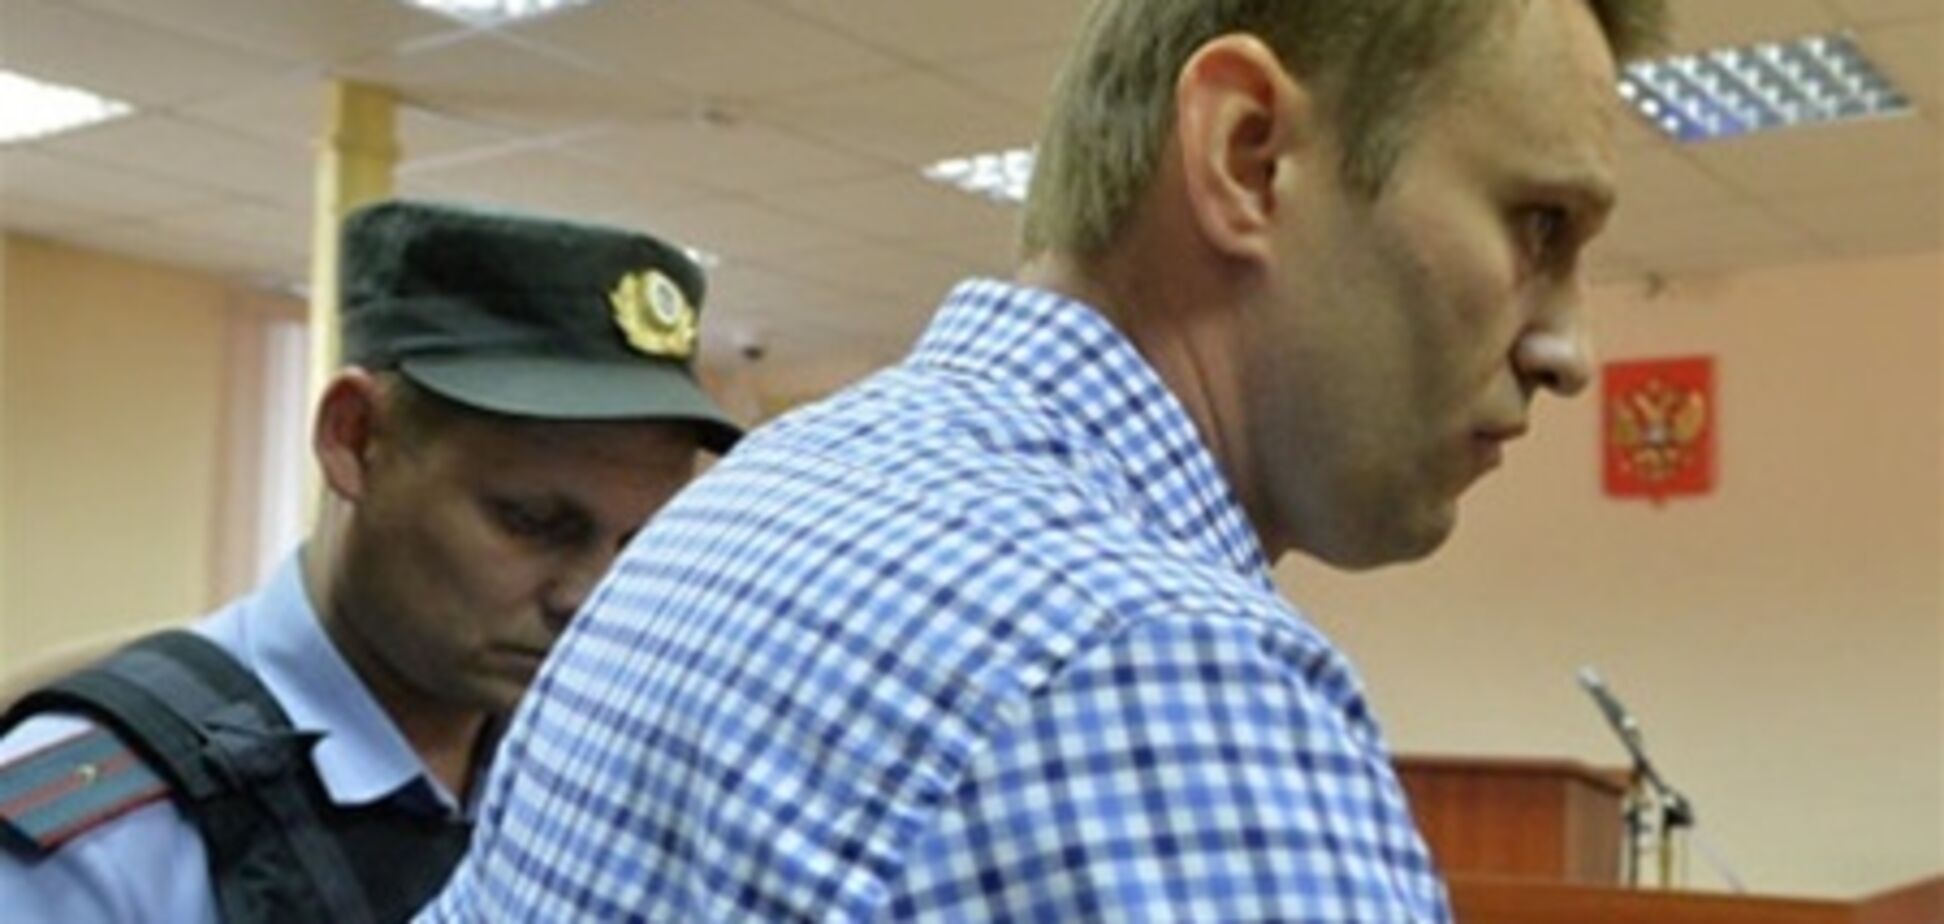 ЕС: приговор Навальному может иметь негативный эффект